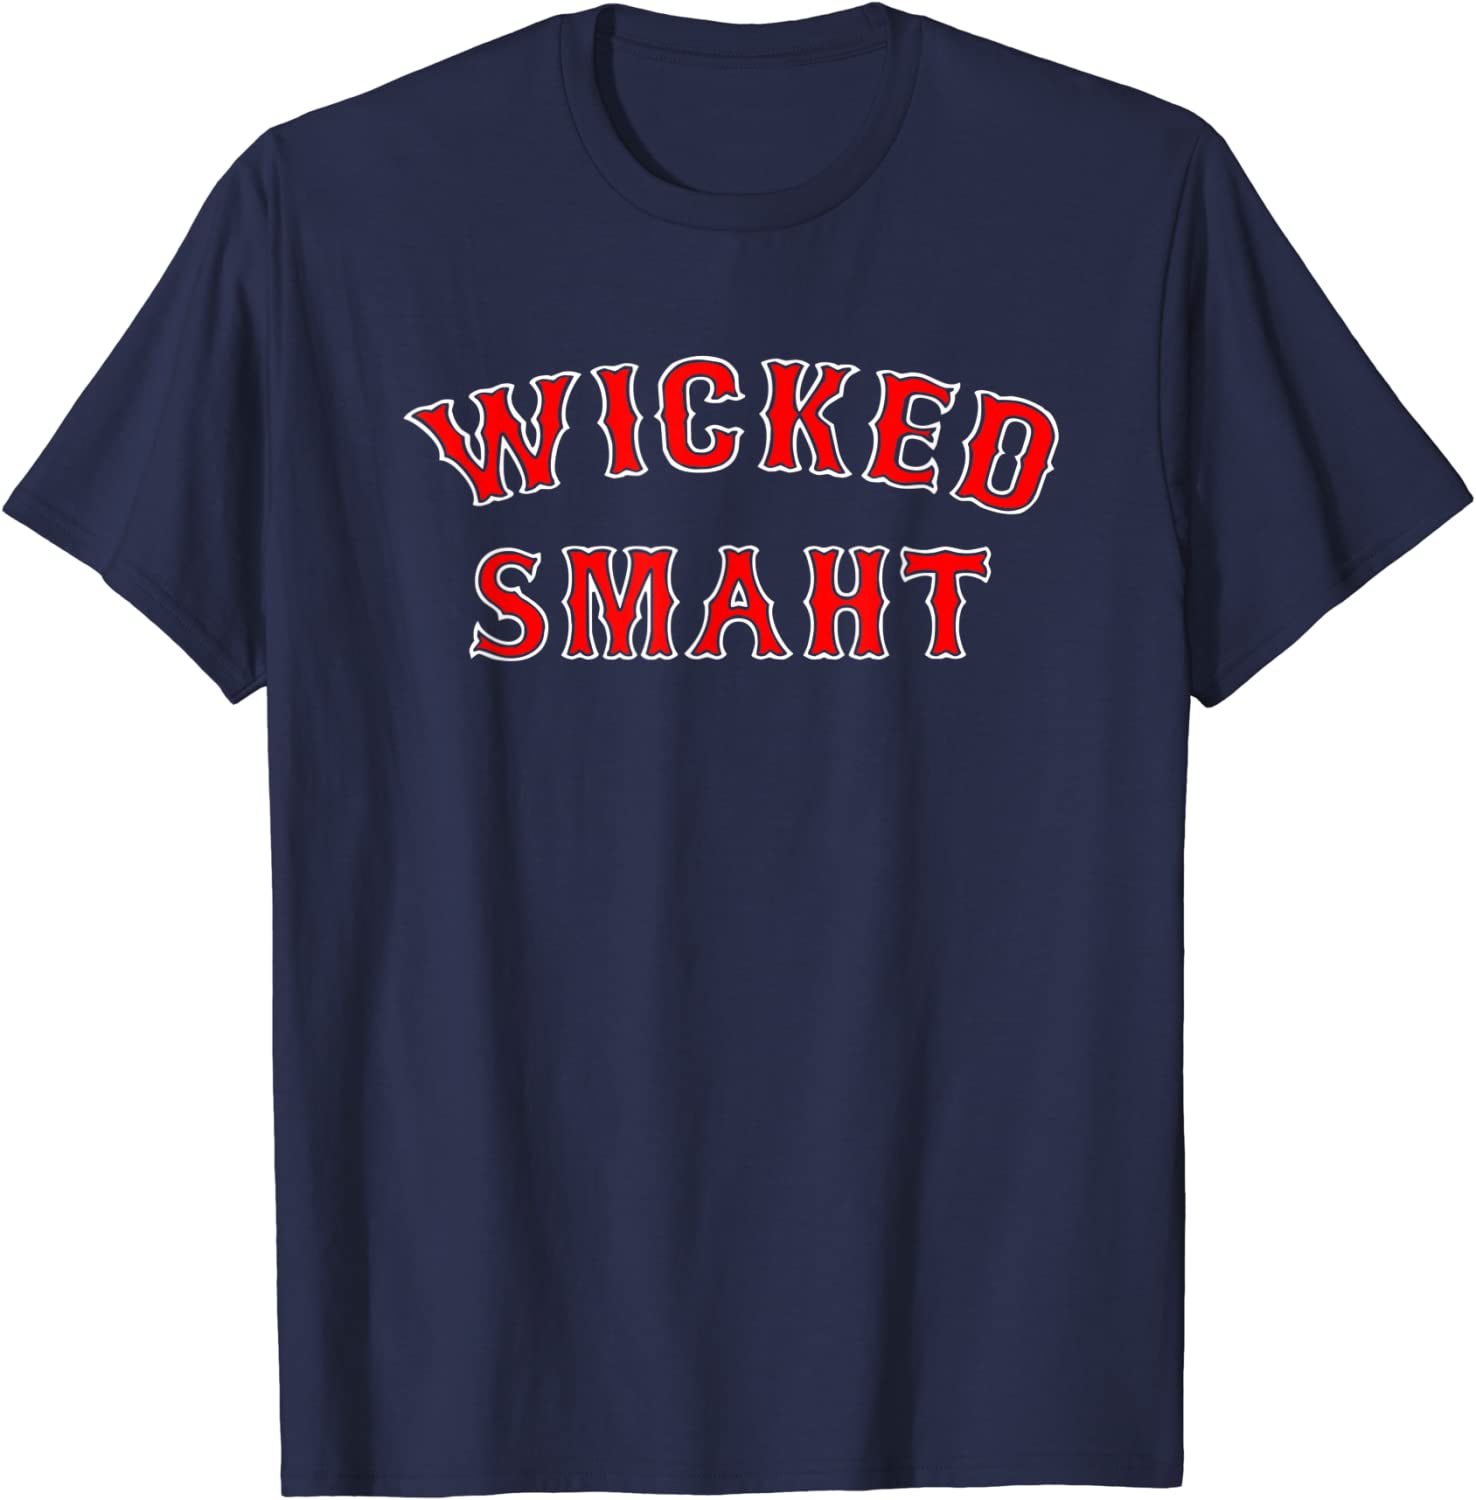 wicked smaht t-shirt